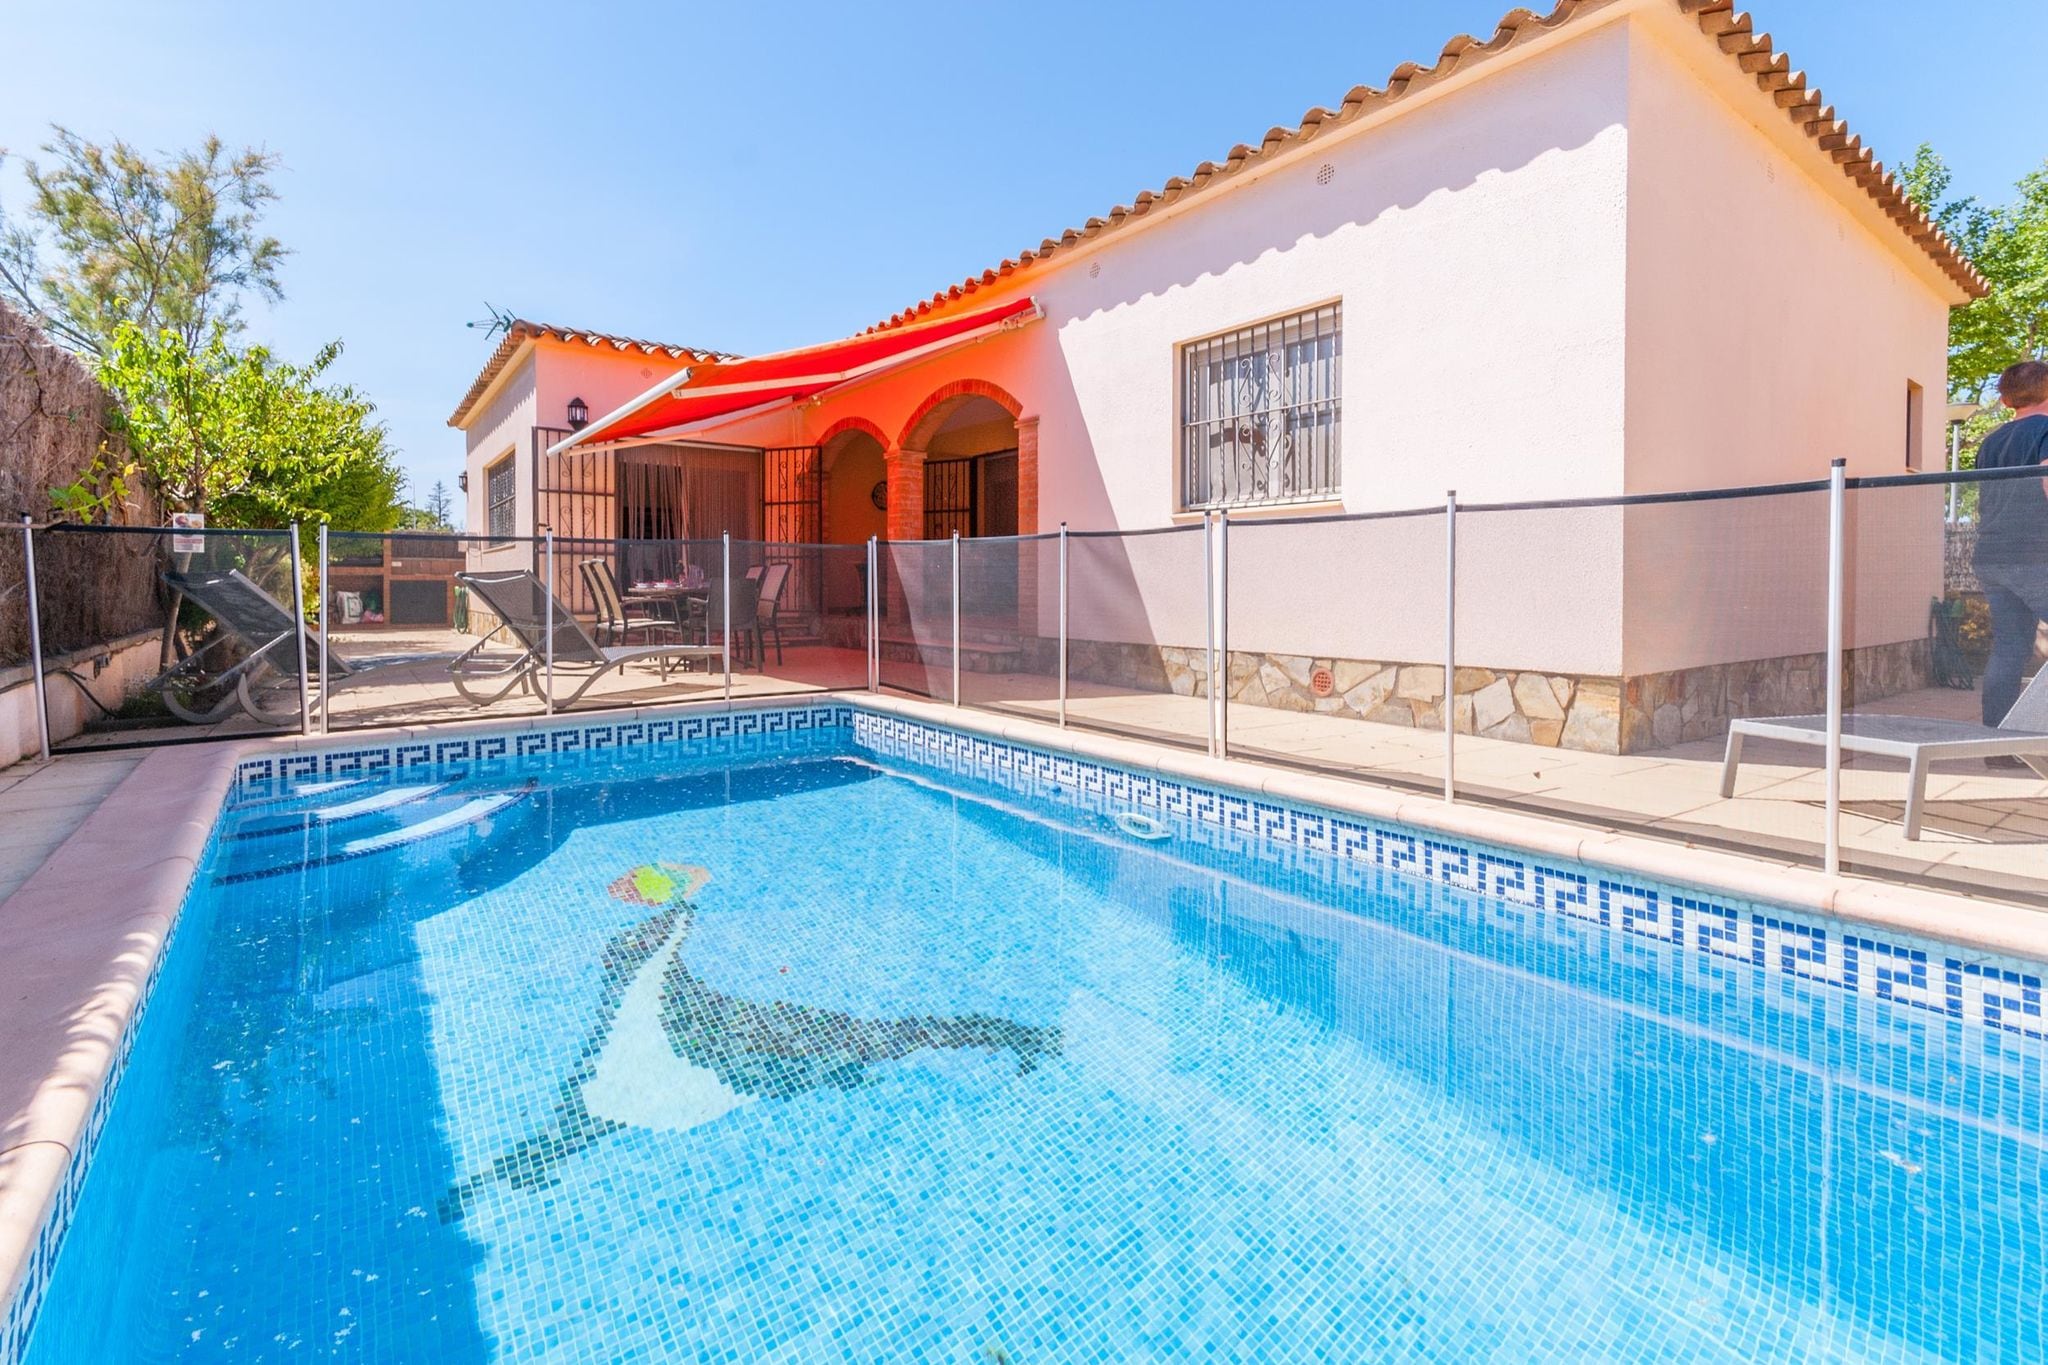 Schitterend vrijstaand vakantiehuis met privé zwembad in rustige omgeving